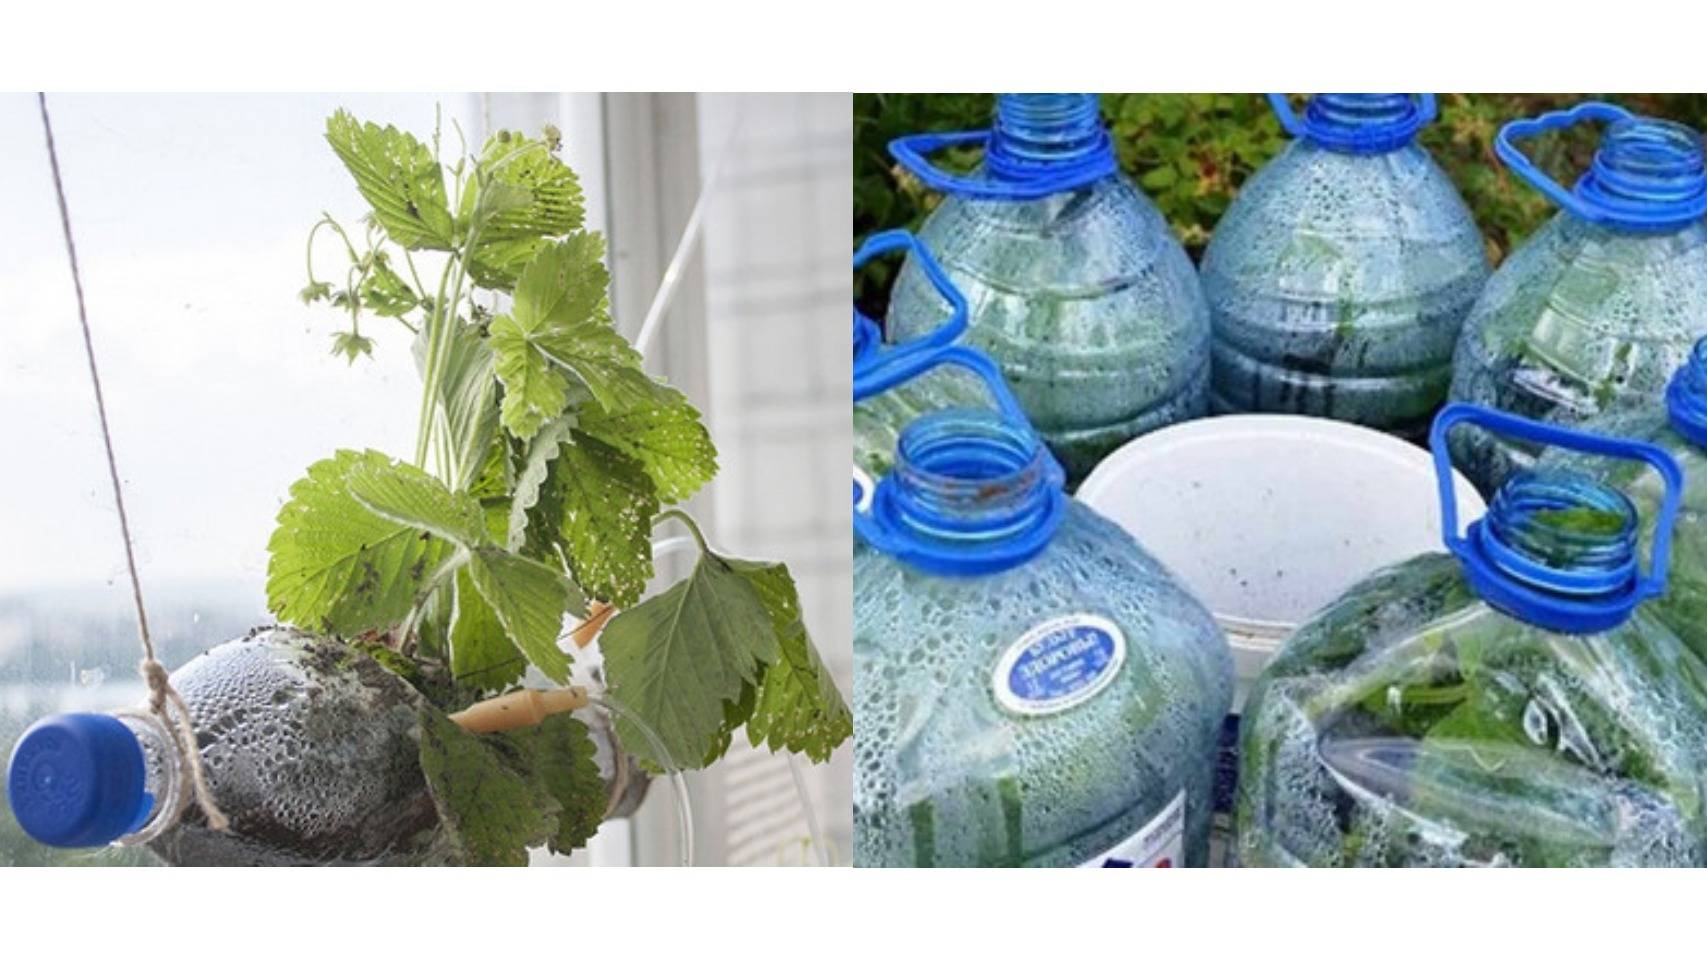 Выращивание огурцов на балконе в пластиковых бутылках пошагово, видео